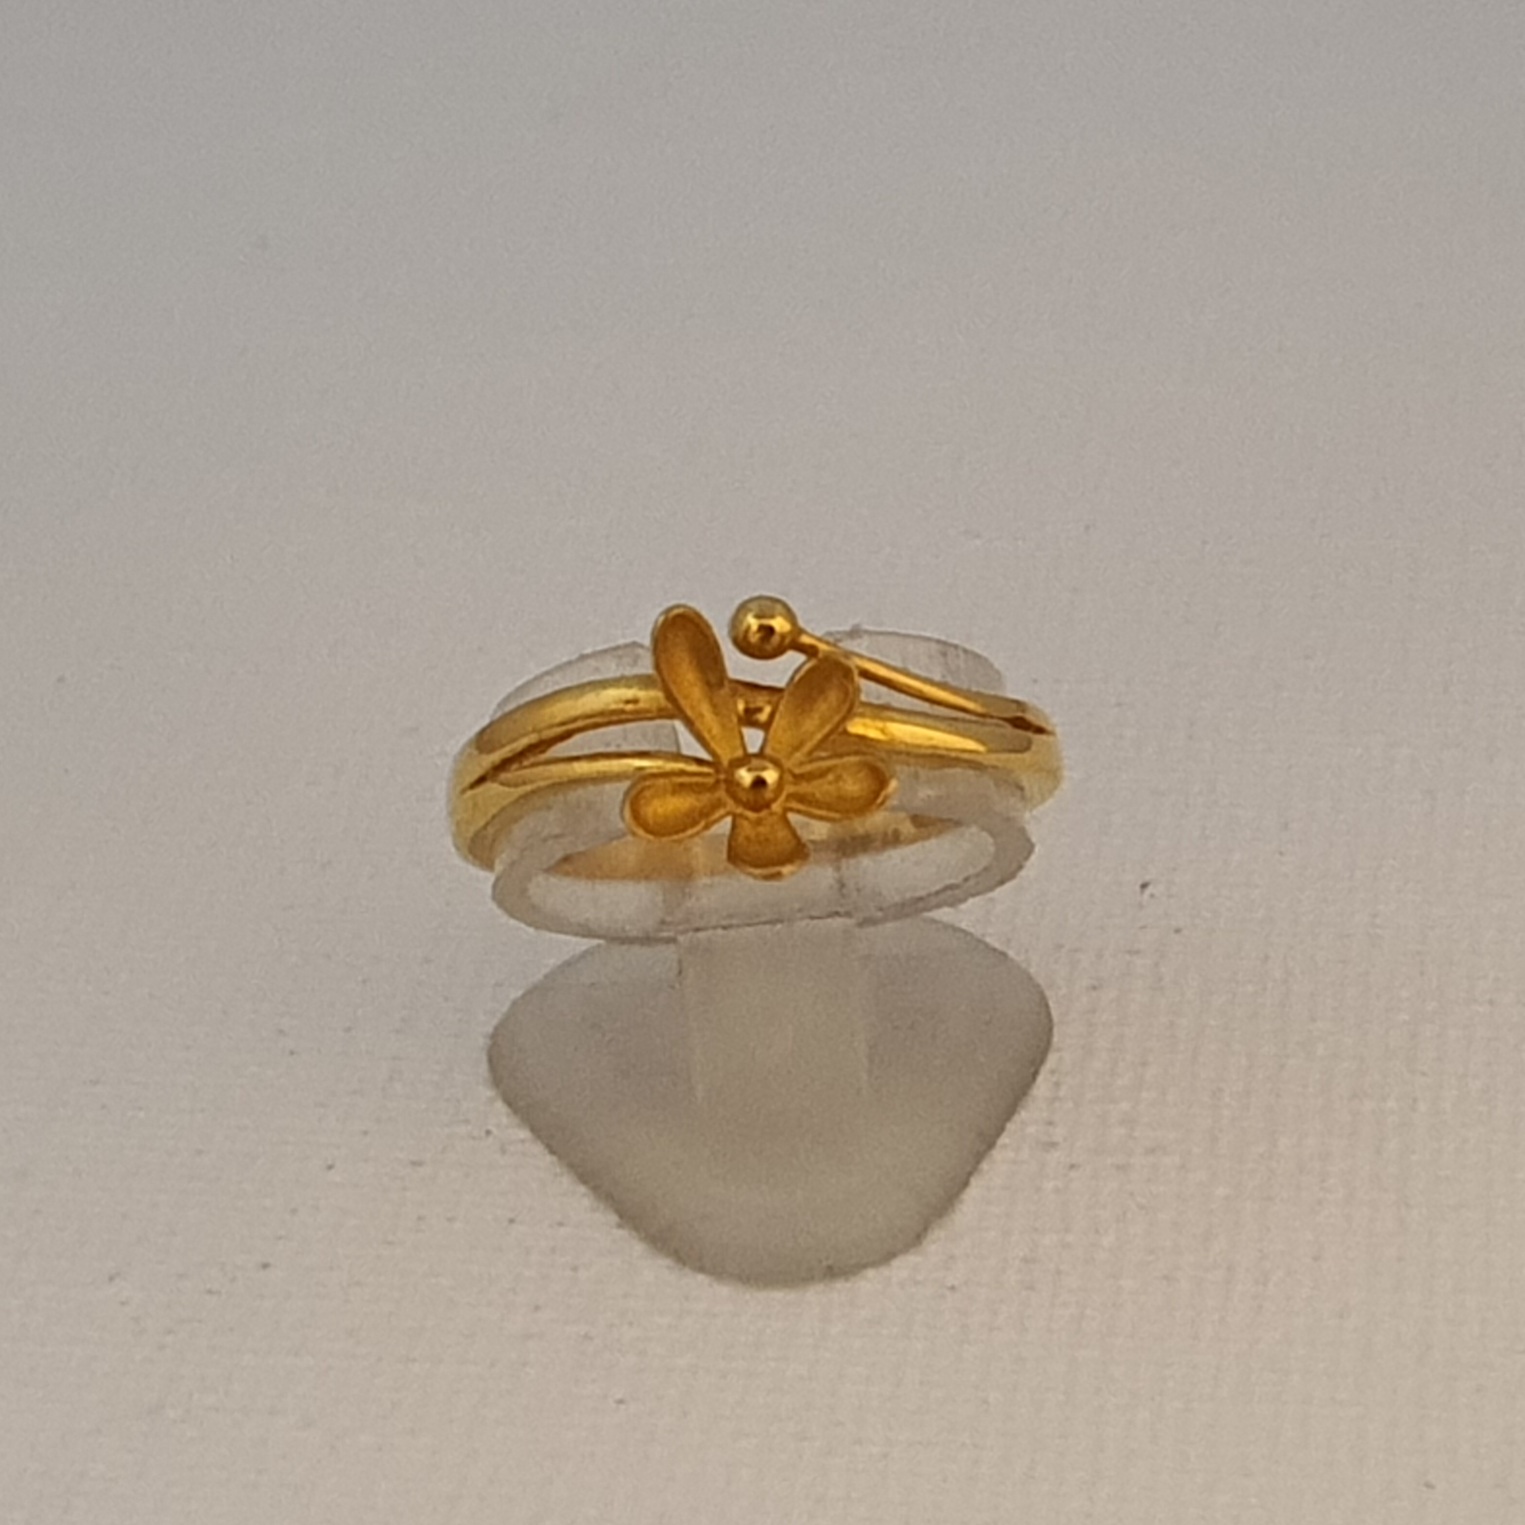 Buy Slender Elegant Tiered Gold Ring At Best Price | Karuri Jewellers-gemektower.com.vn